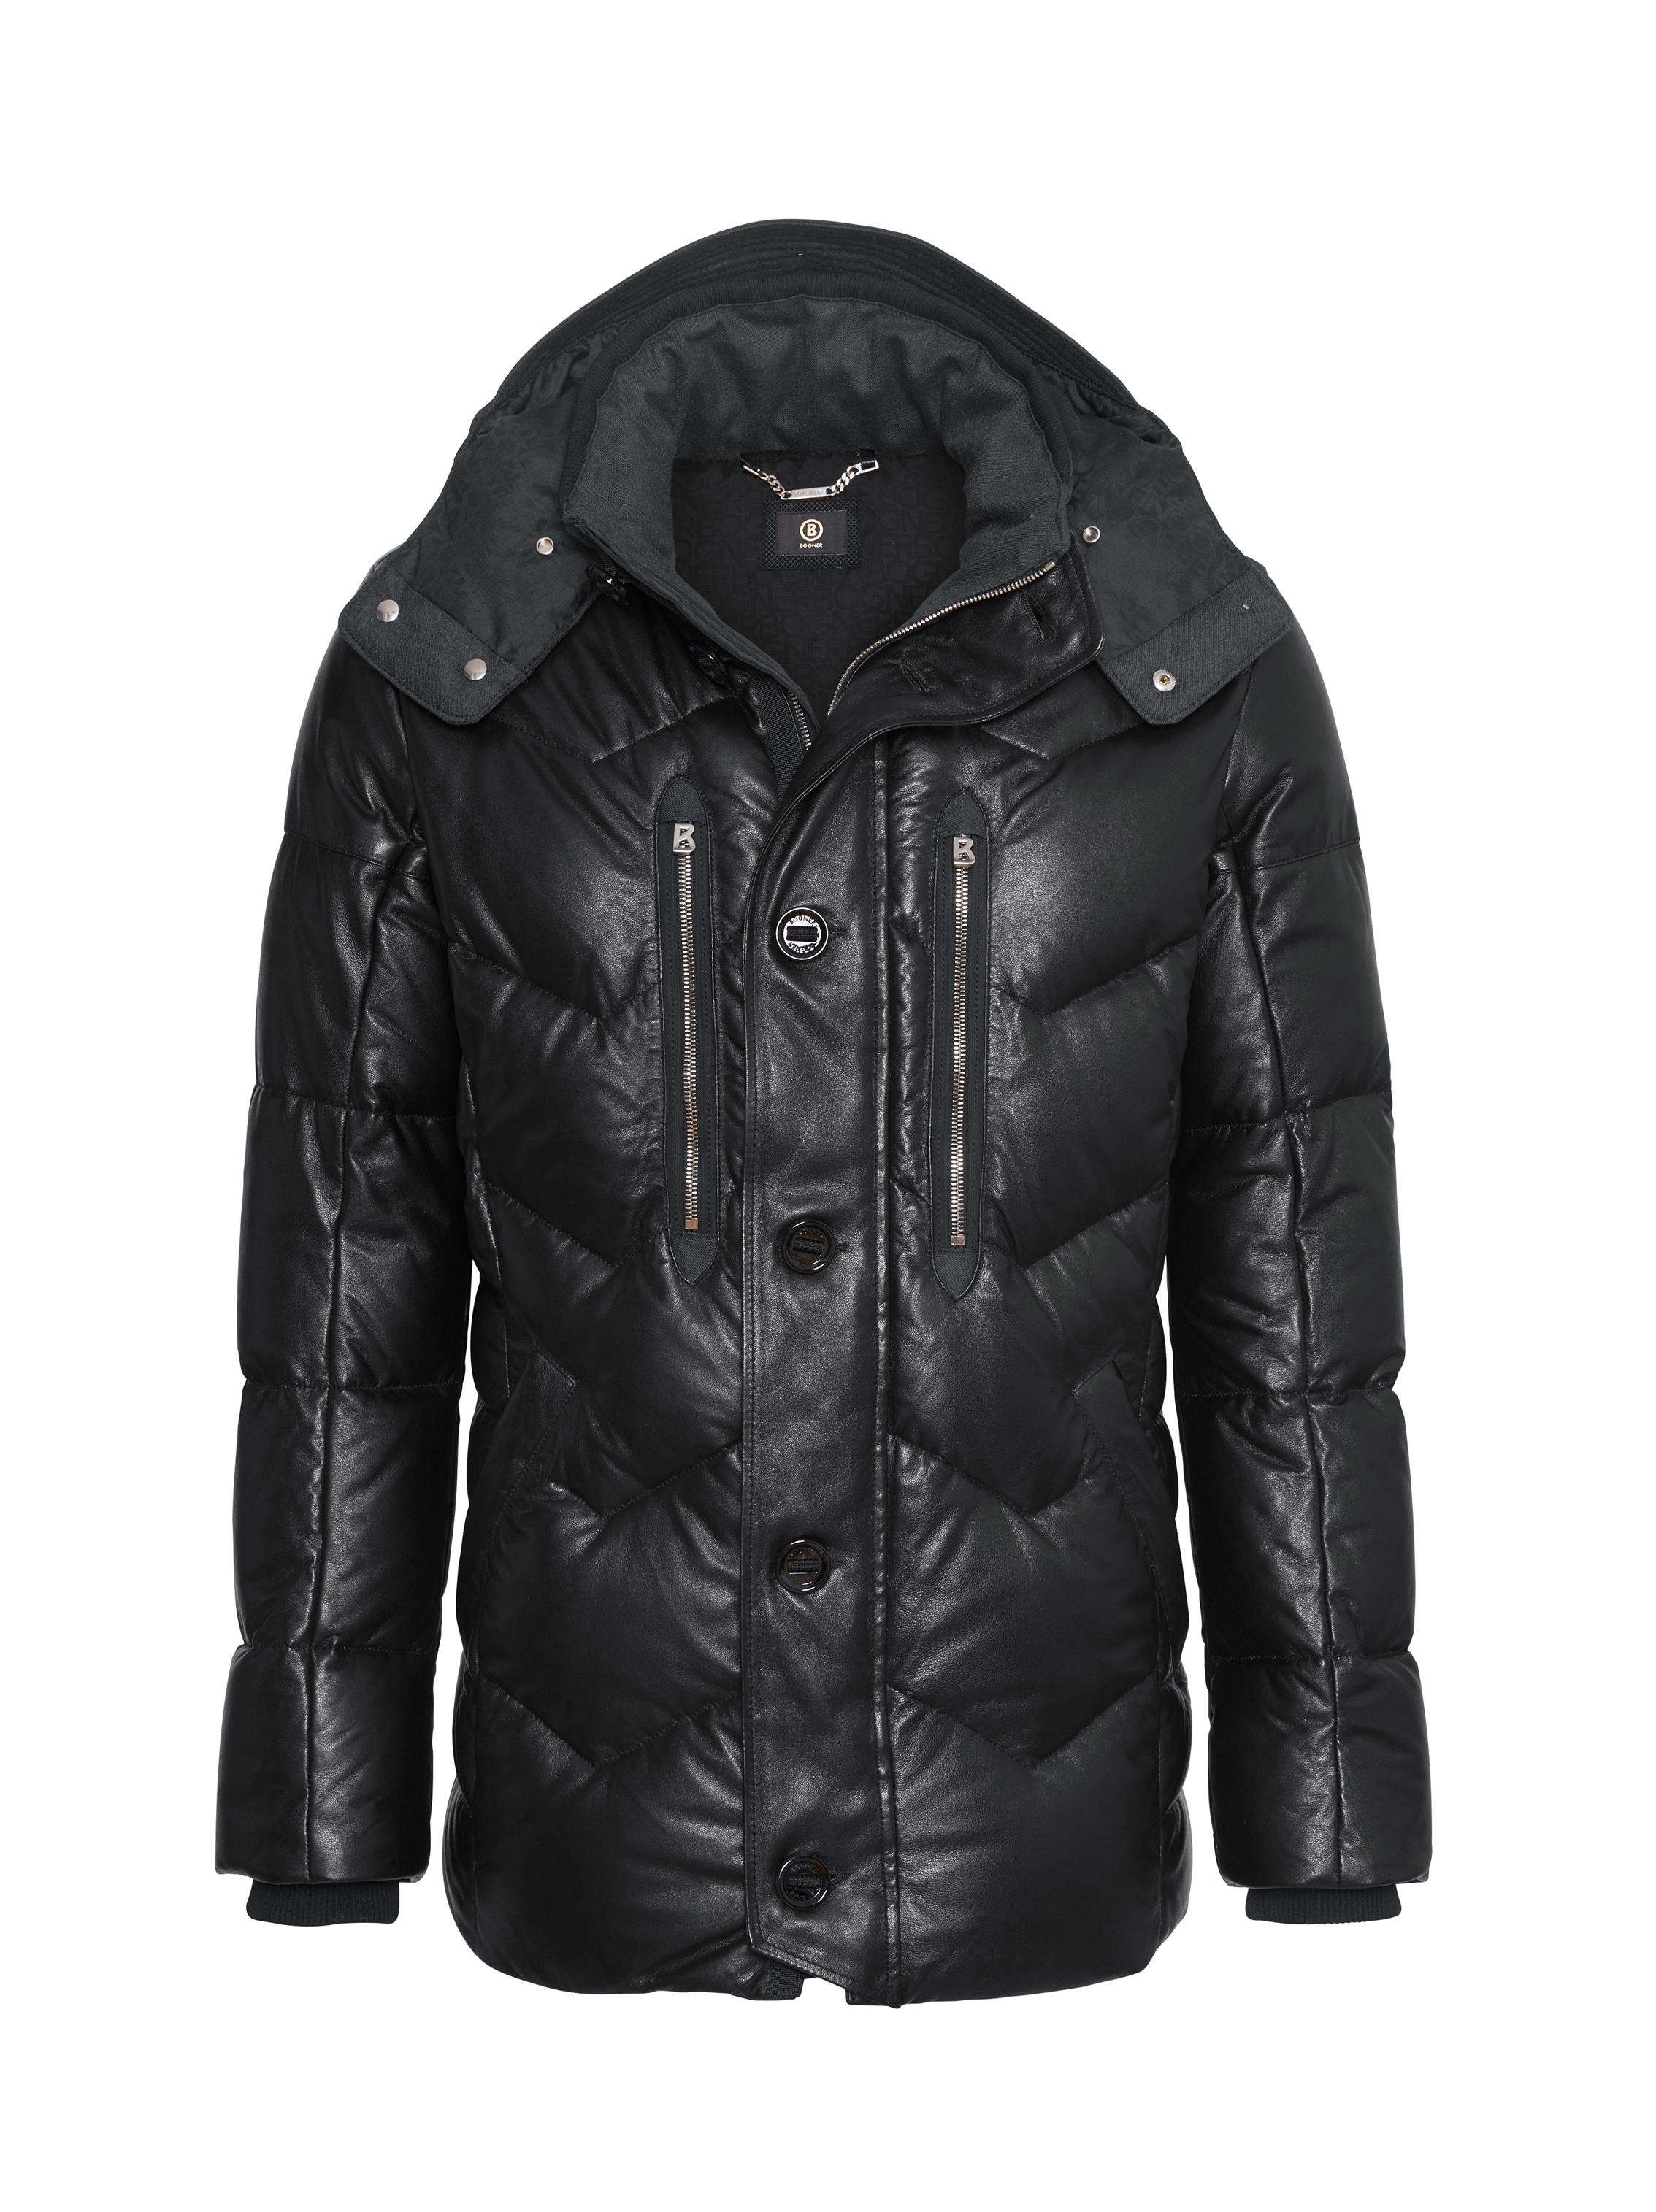 Bogner Leather Down Jacket Mircol in Black for Men - Lyst